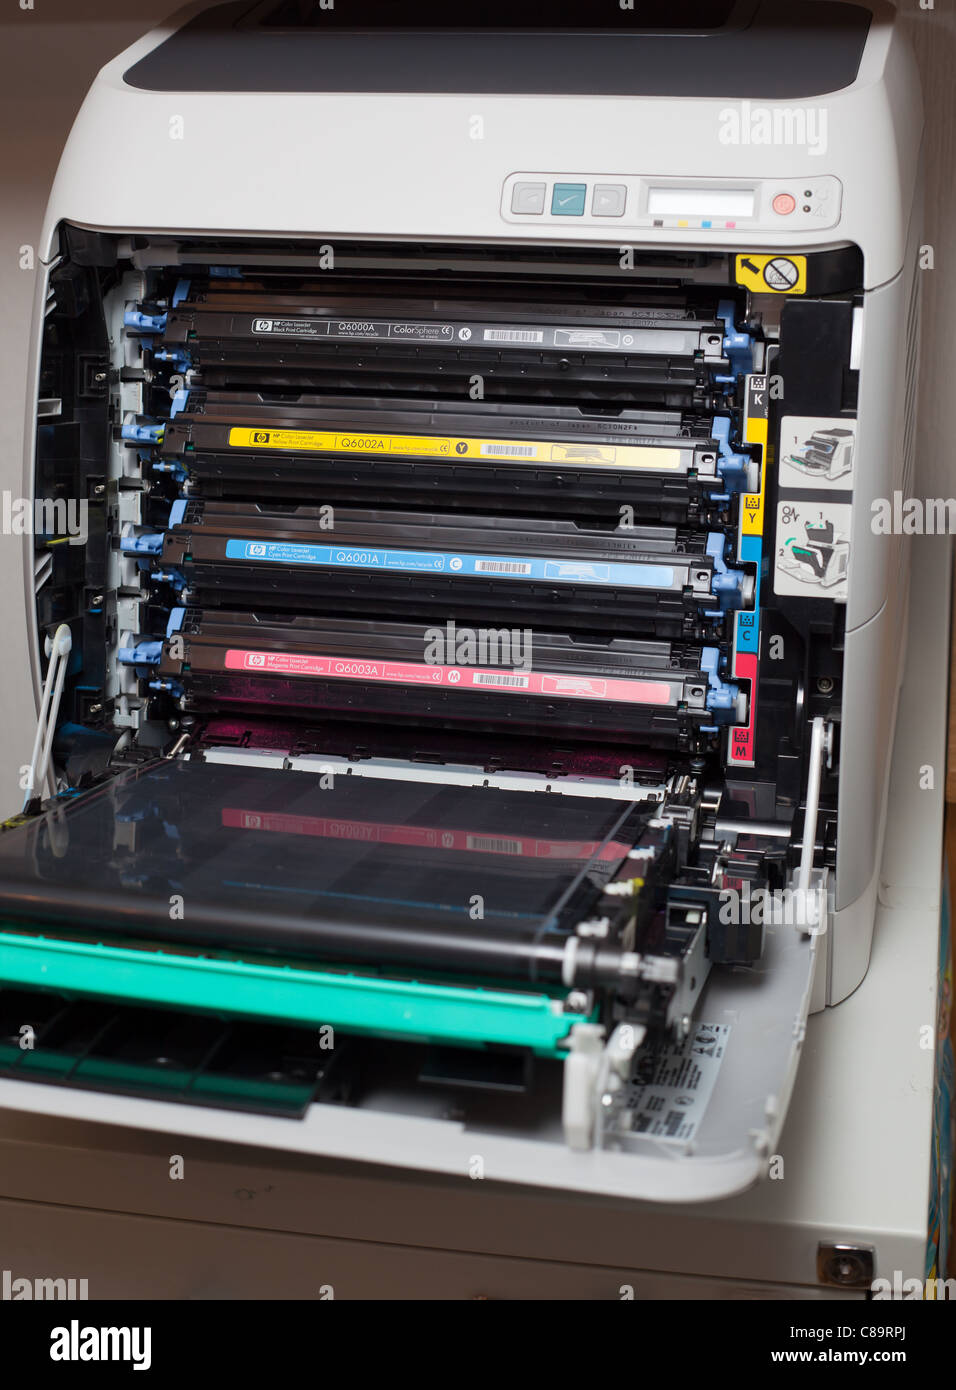 studieafgift Ubrugelig klon Toner cartridges in HP color Laserjet 2605DN printer Stock Photo - Alamy